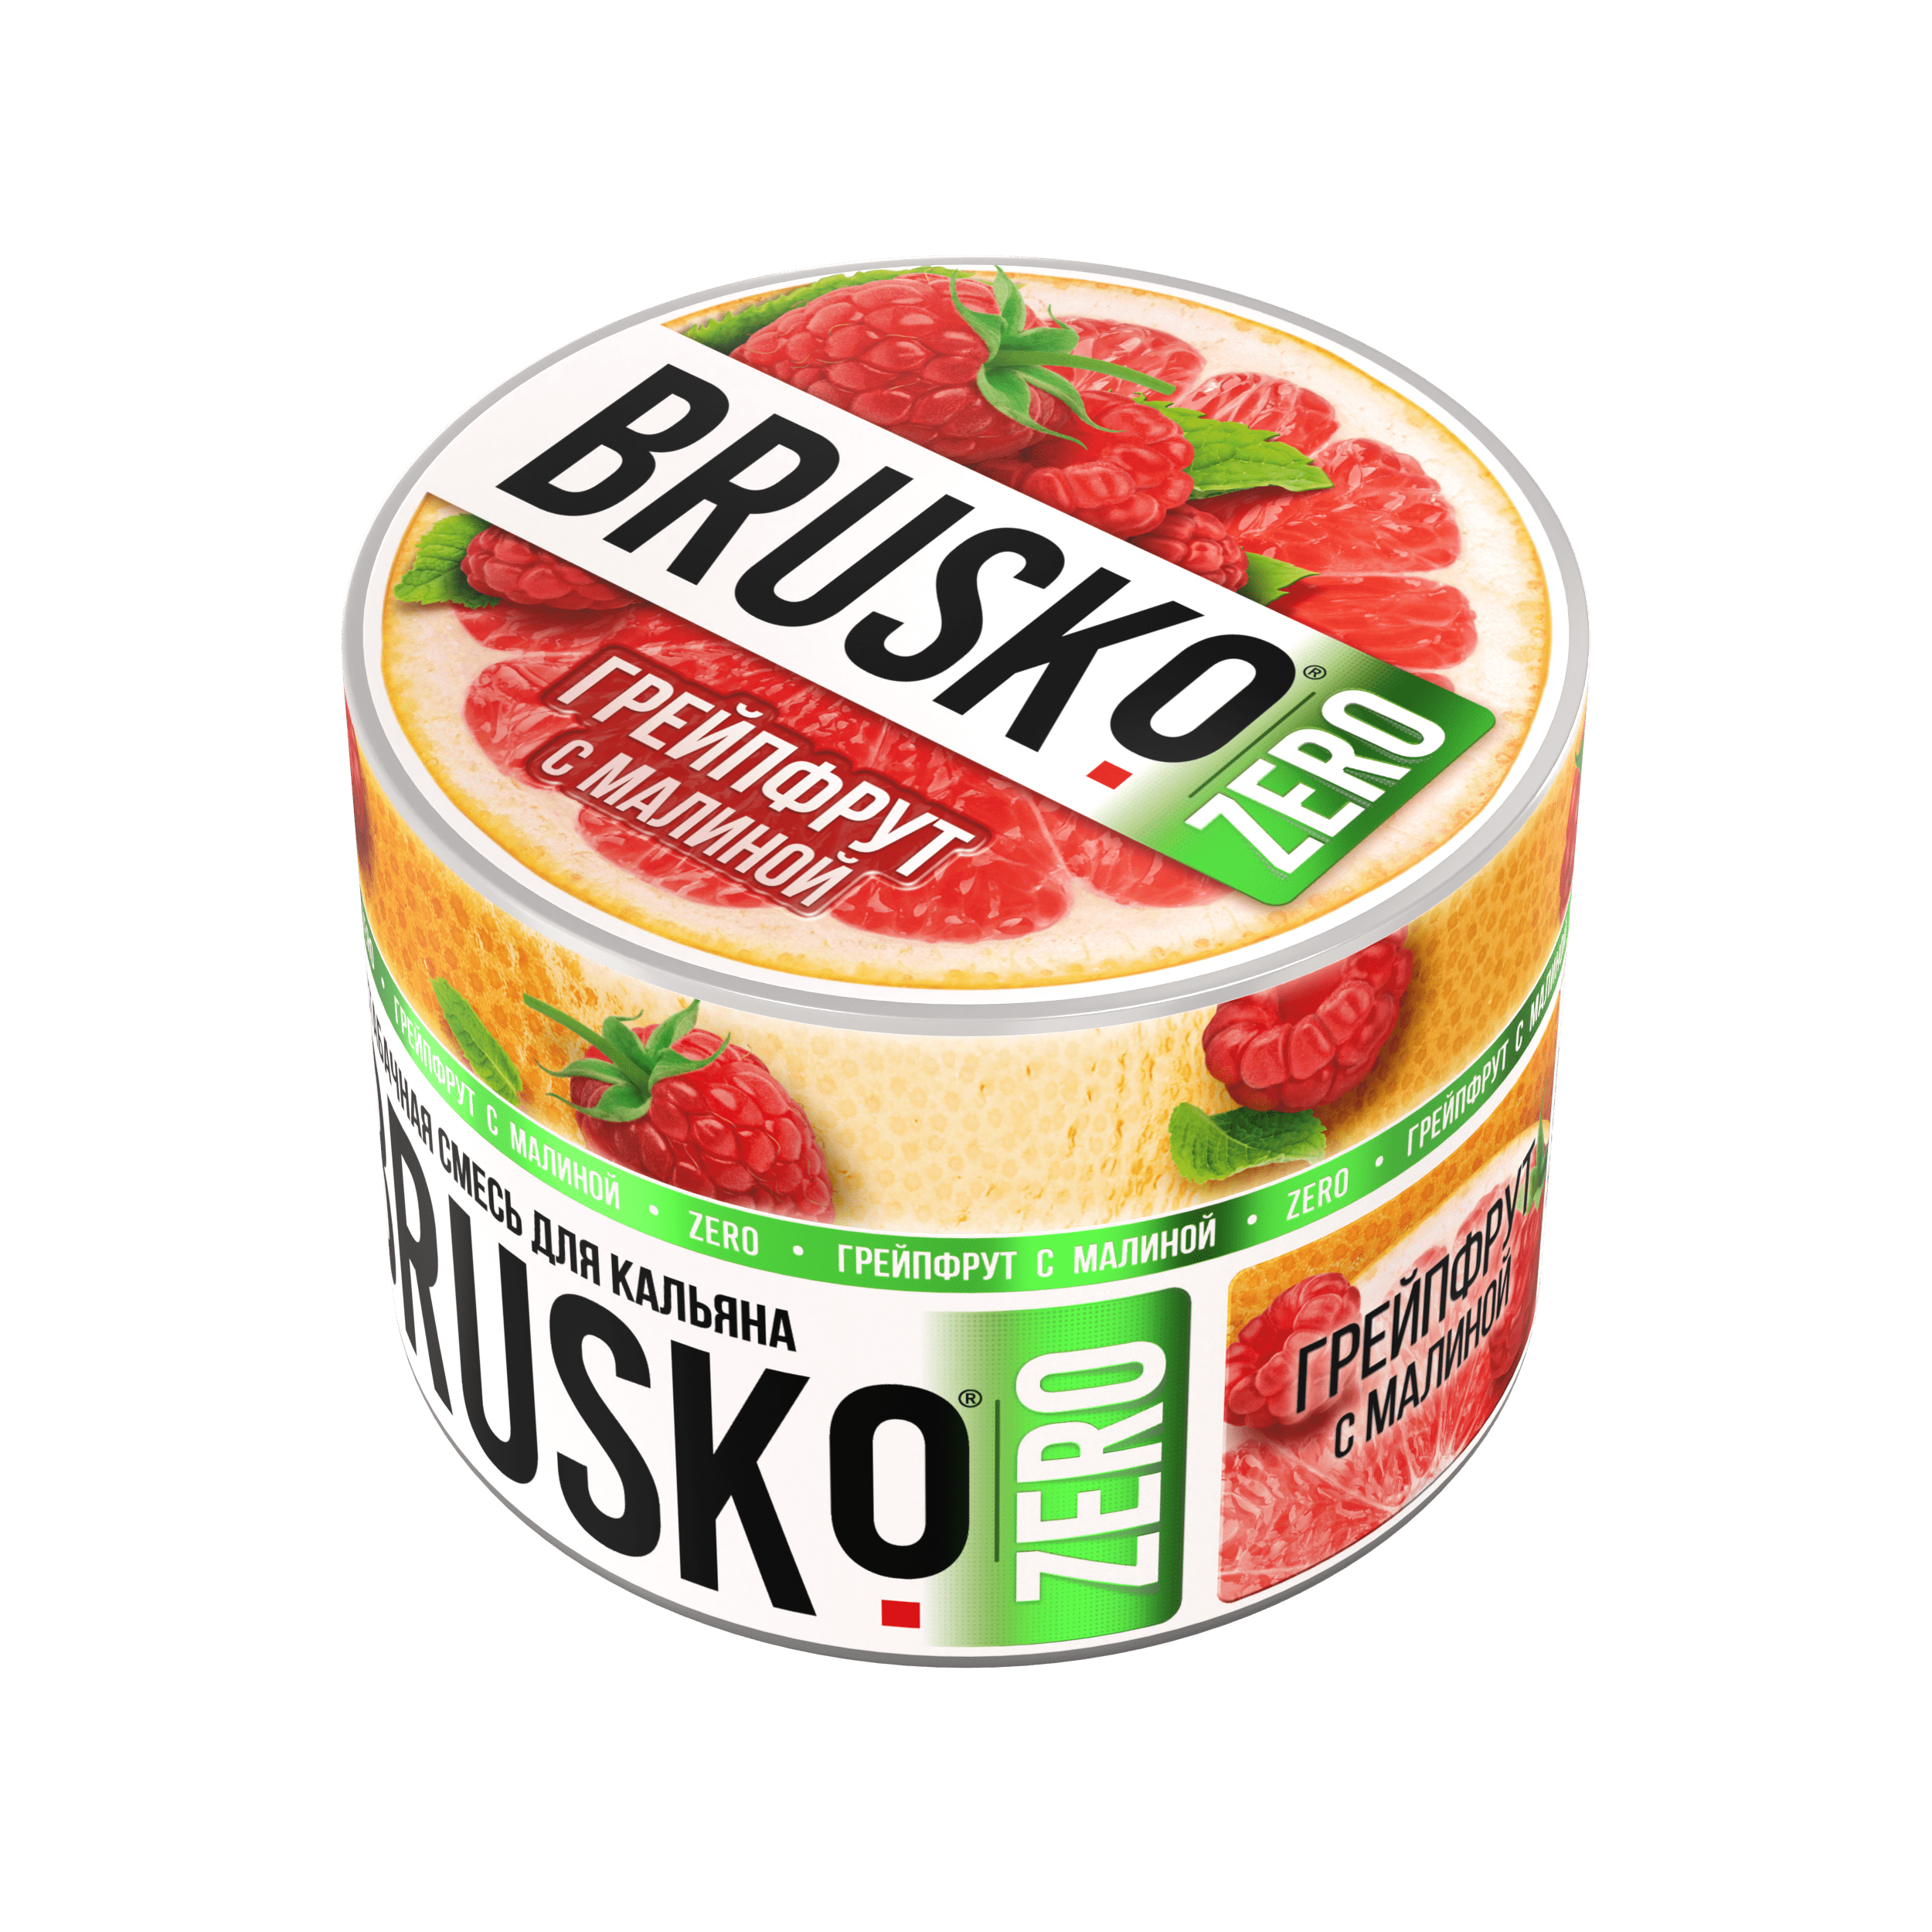 Бестабачная смесь для кальяна BRUSKO, 50 г, Грейпфрут с малиной, Zero (М)